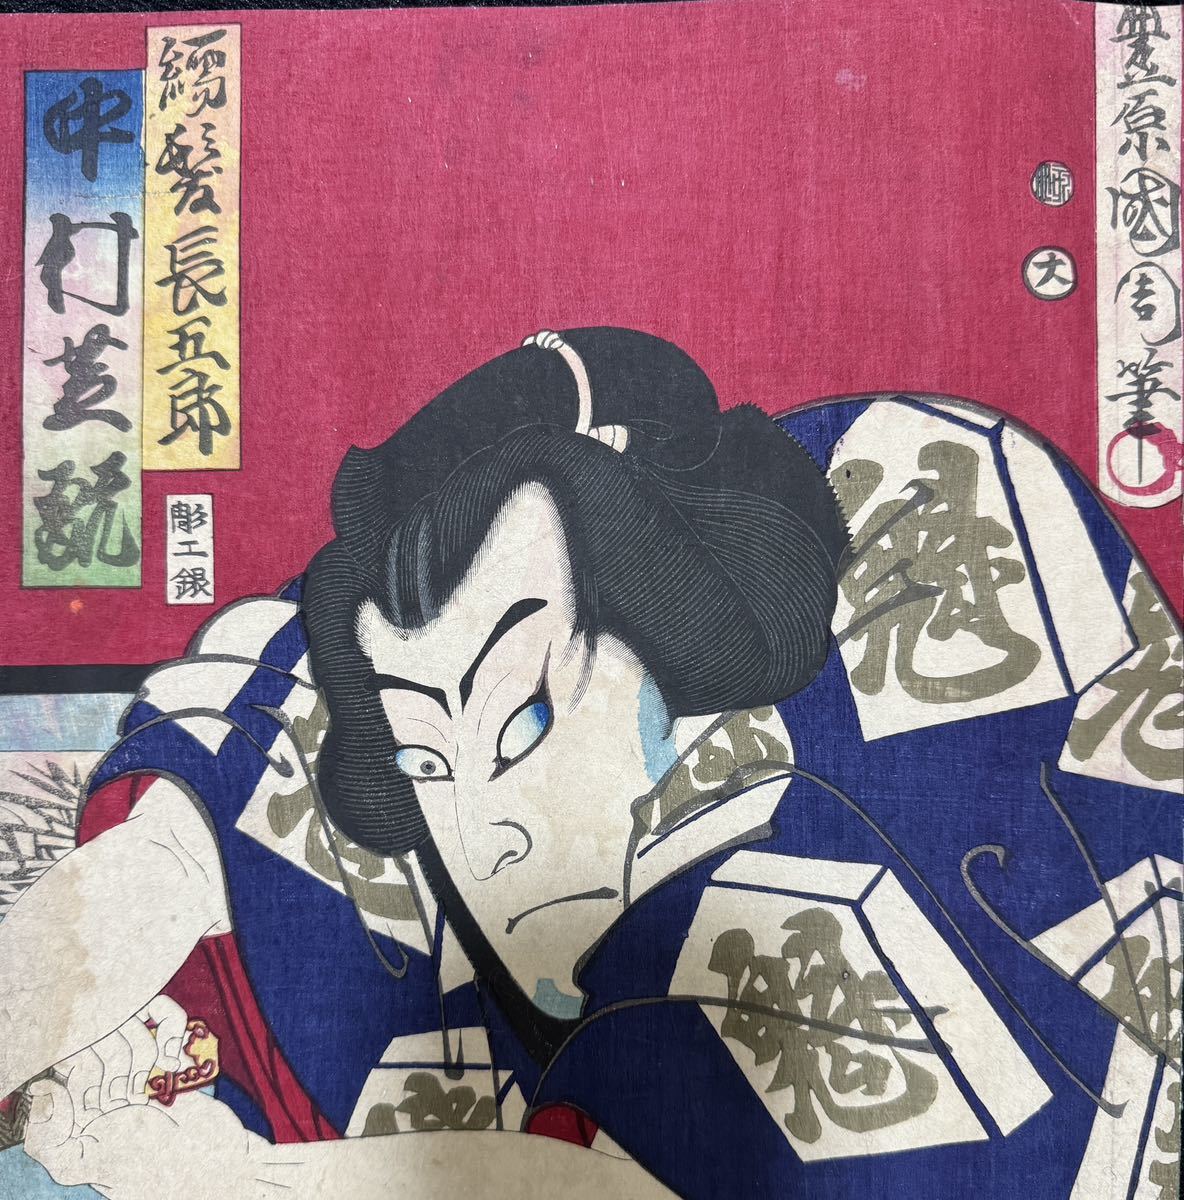  Meiji период / подлинный произведение .. страна . подлинный товар картина в жанре укиё гравюра на дереве сцена из кабуки изображение актеров газонная трава .... большой размер три листов .. обратная сторона удар .4